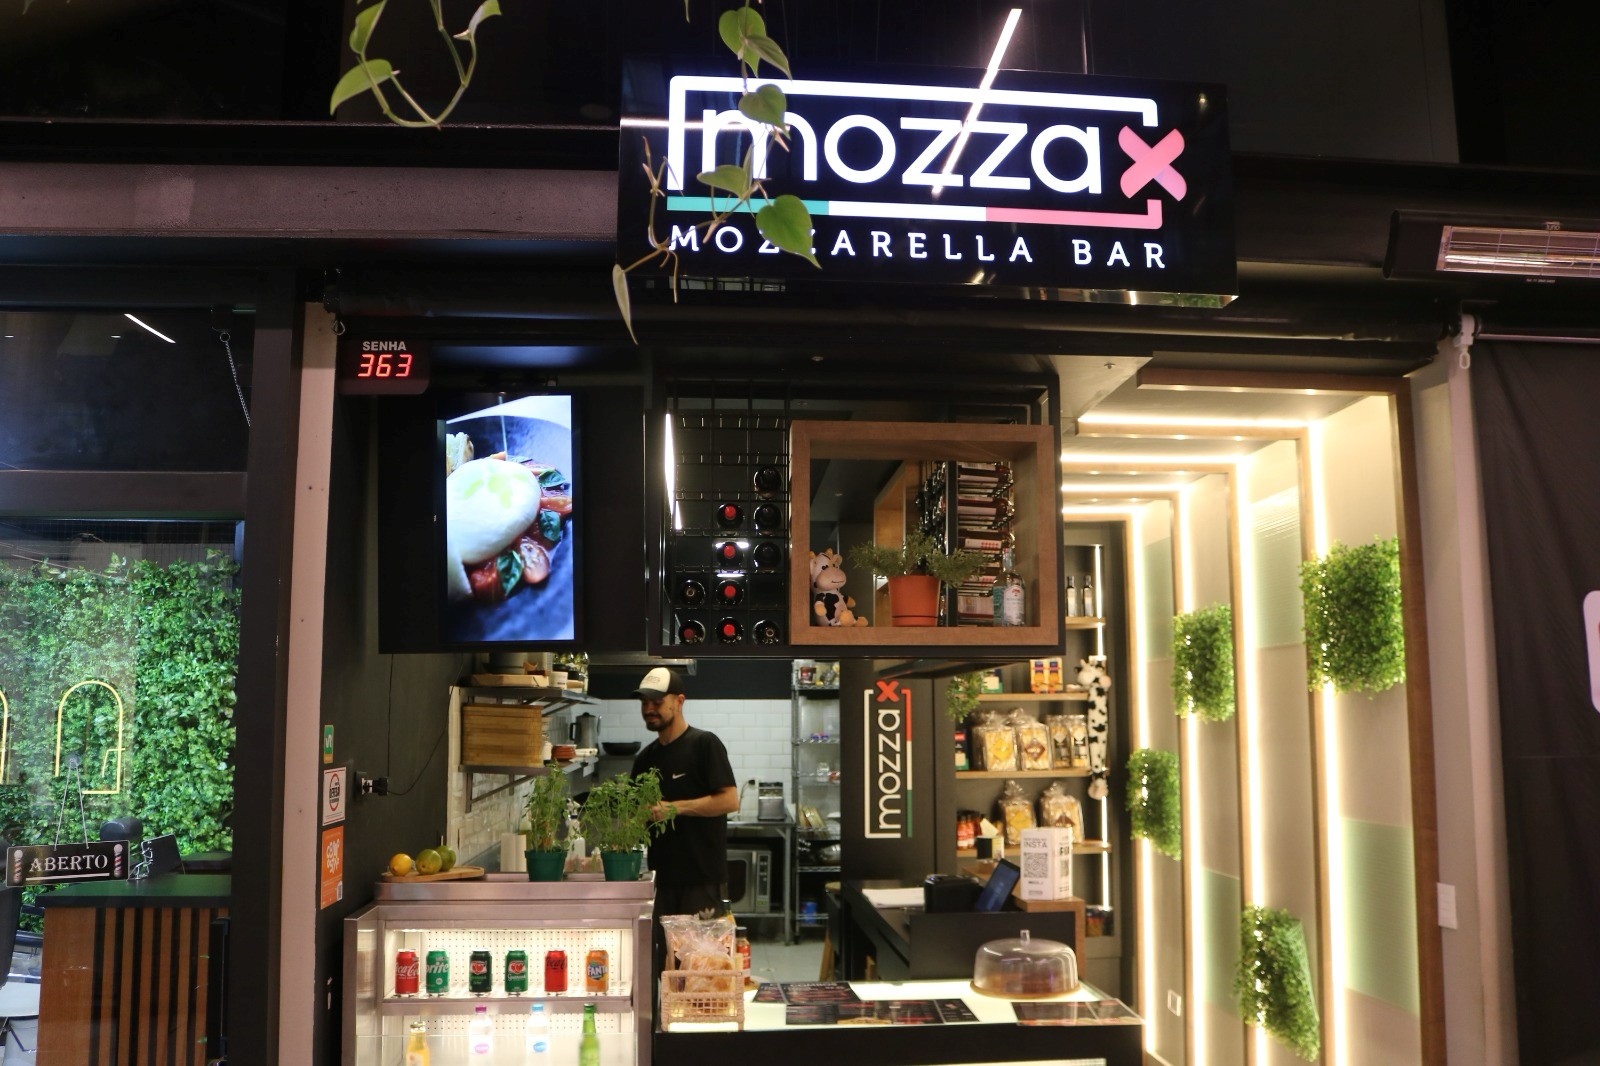 Mozza X – O primeiro Mozzarella Bar de Curitiba